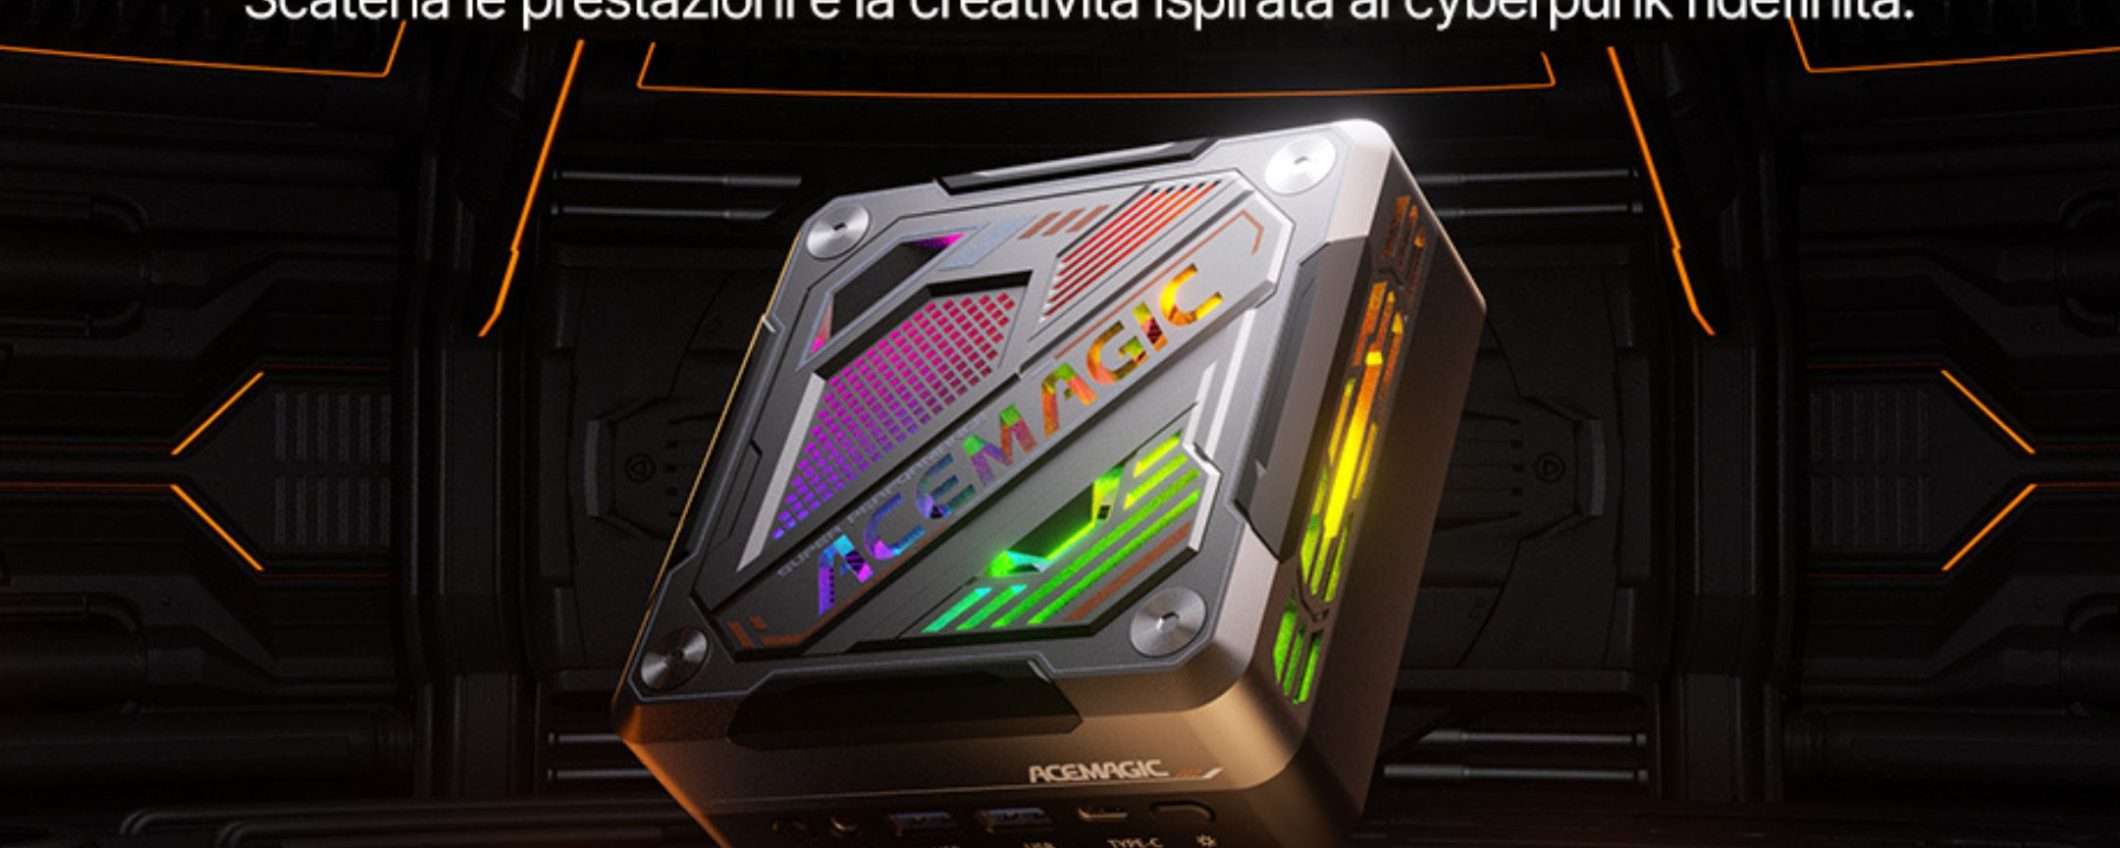 Mini PC, Maxi Affare! Soli 500 euro per Ryzen 7 e 32GB (Coupon -50%)